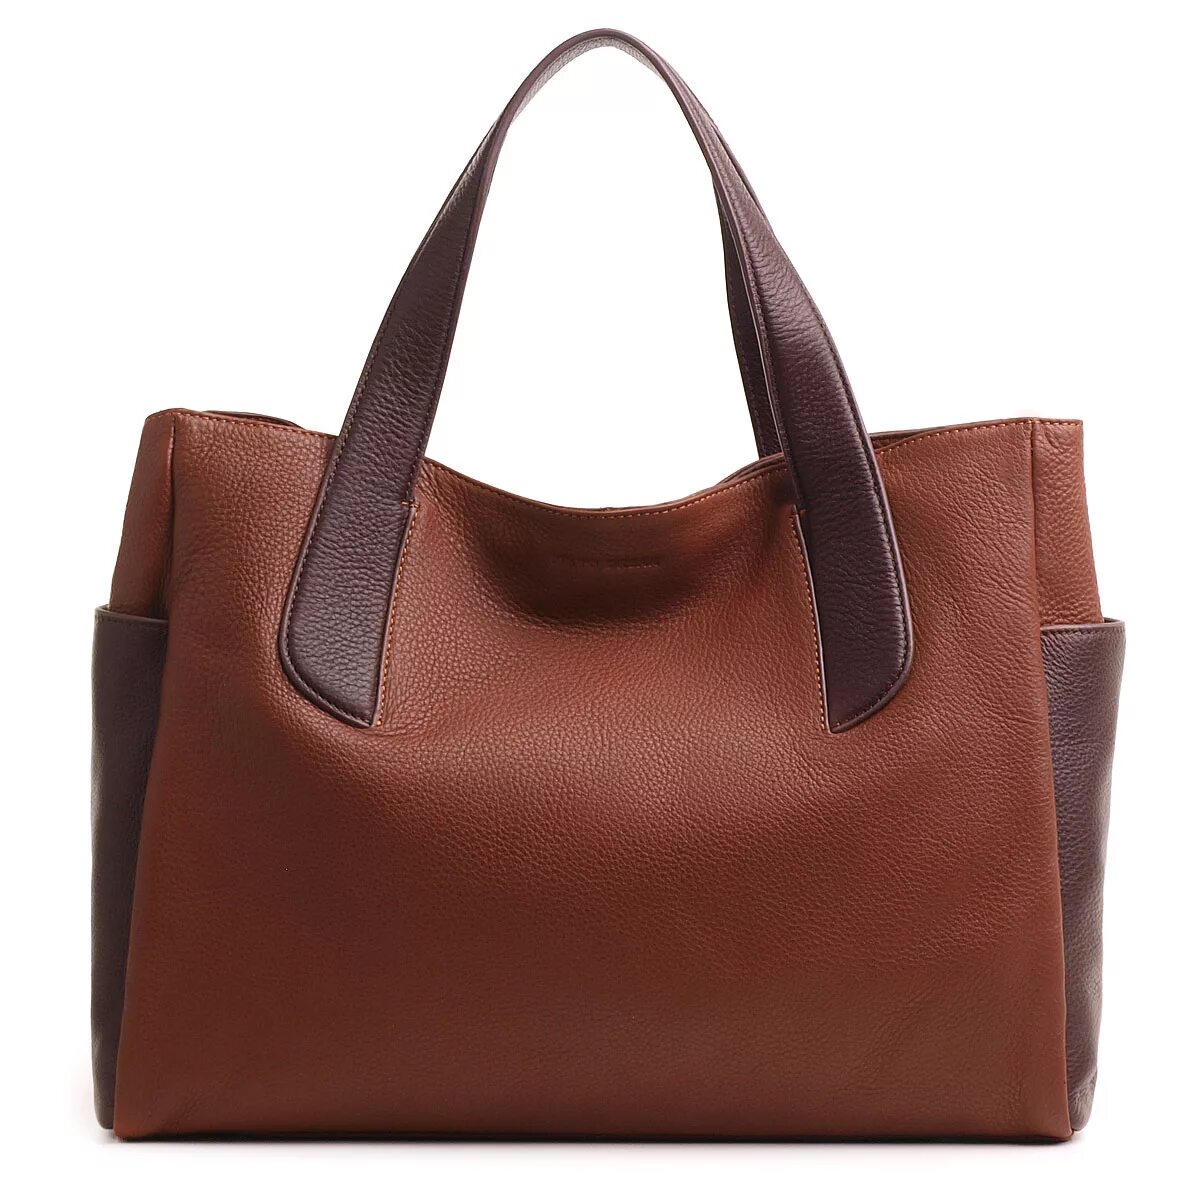 Сумки brown. Fiato Dream сумка коричневая. Женские женские кожаные сумки на валберис. Сумки валберис женские натуральная кожа. Женская сумка Baglyn Brown.